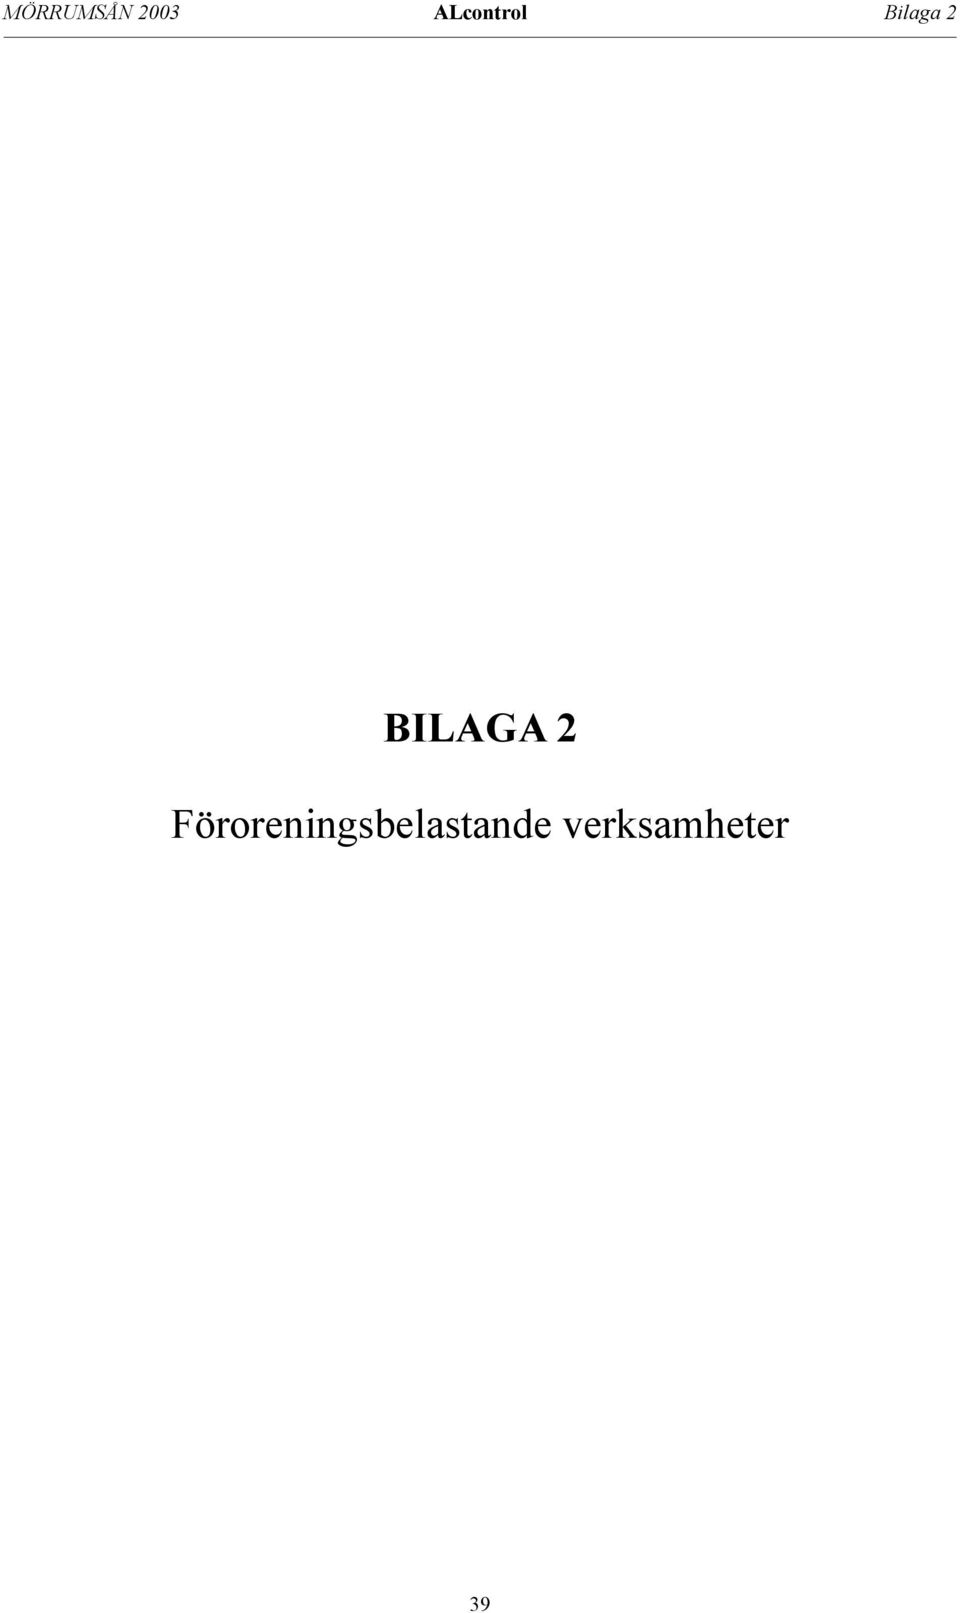 BILAGA 2